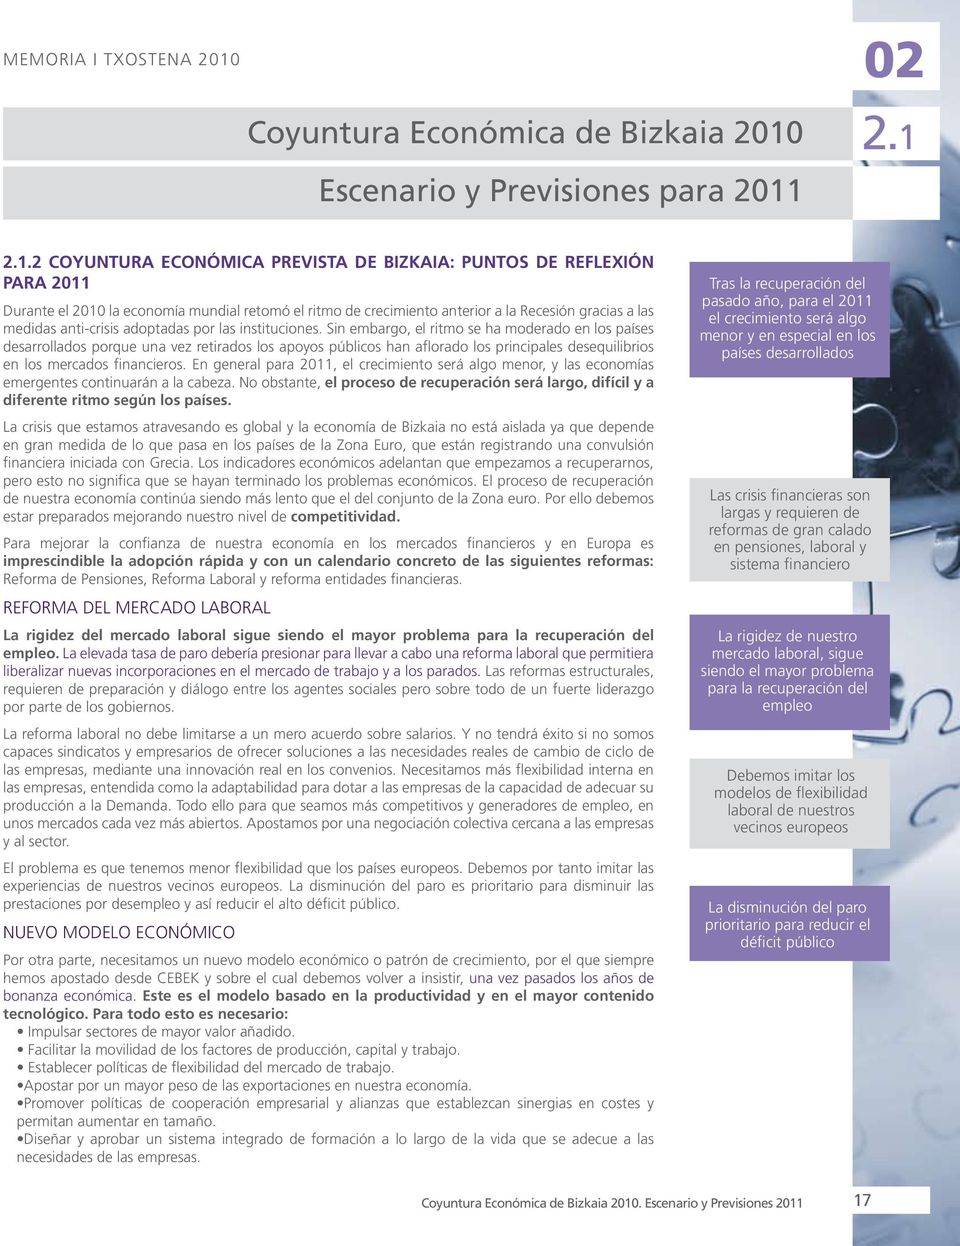 Escenario y Previsiones para 2011